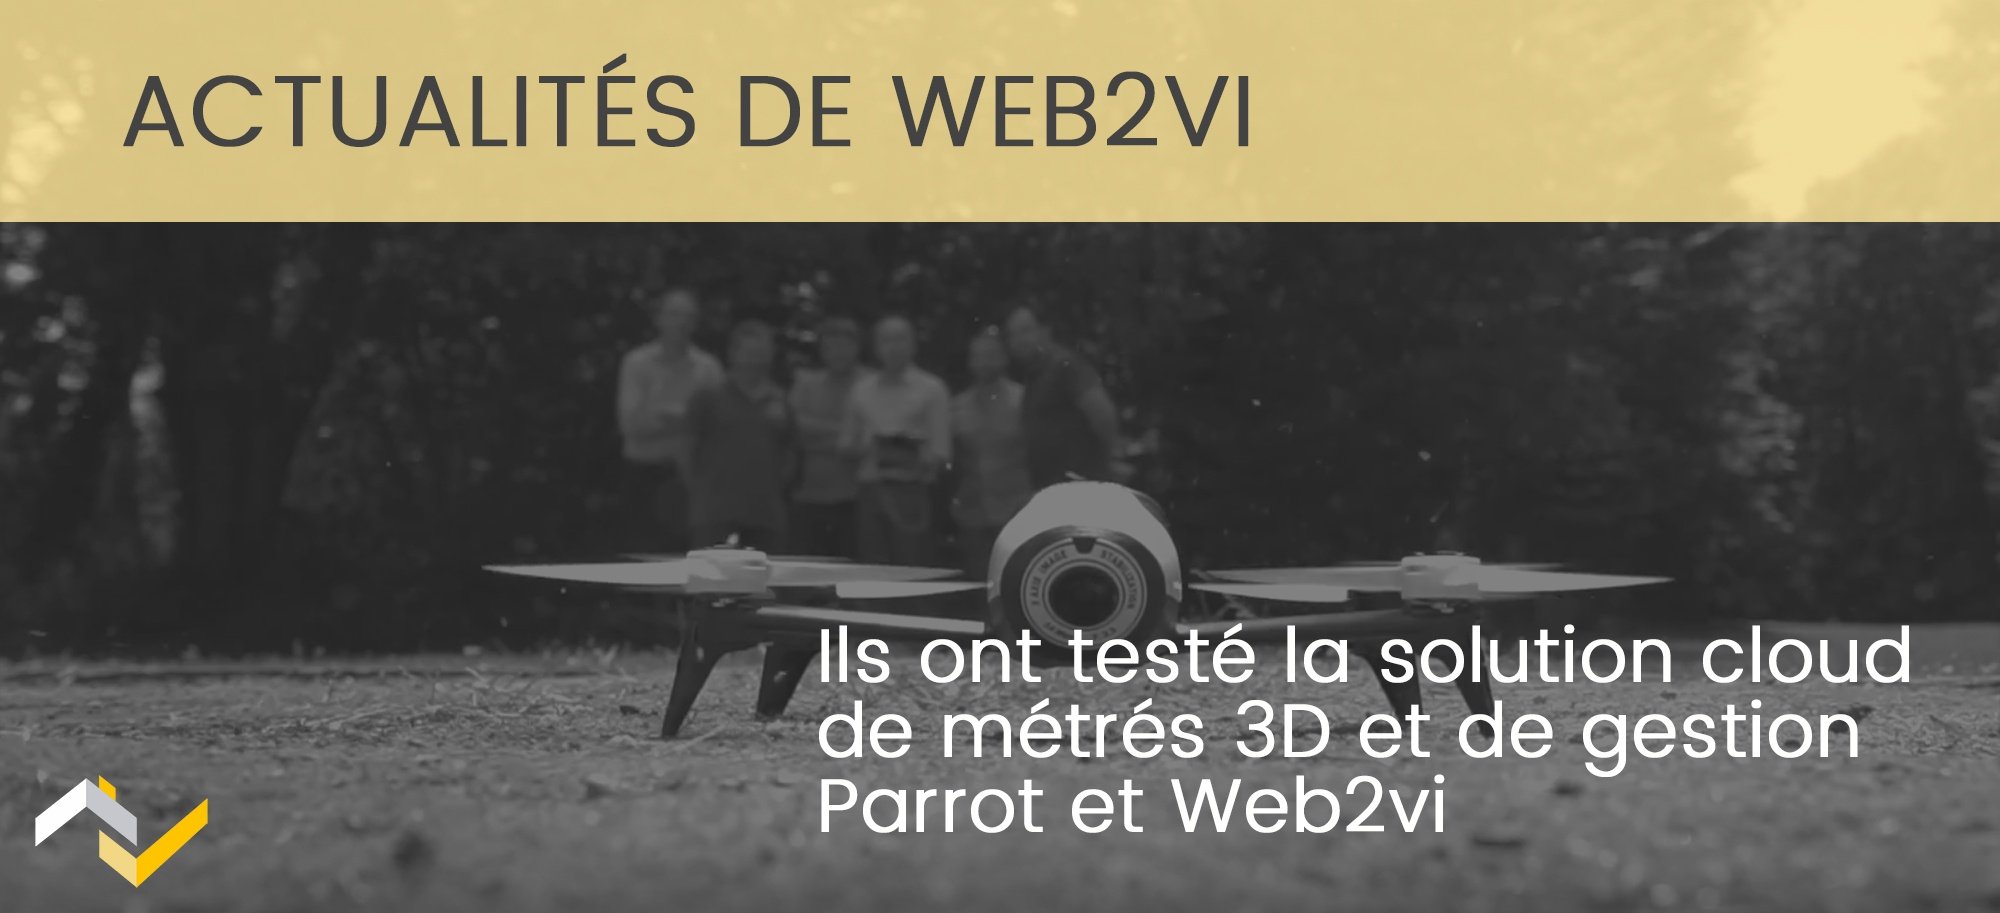 Ils ont testé la solution cloud de métré 3D par drone Parrot et Web2vi